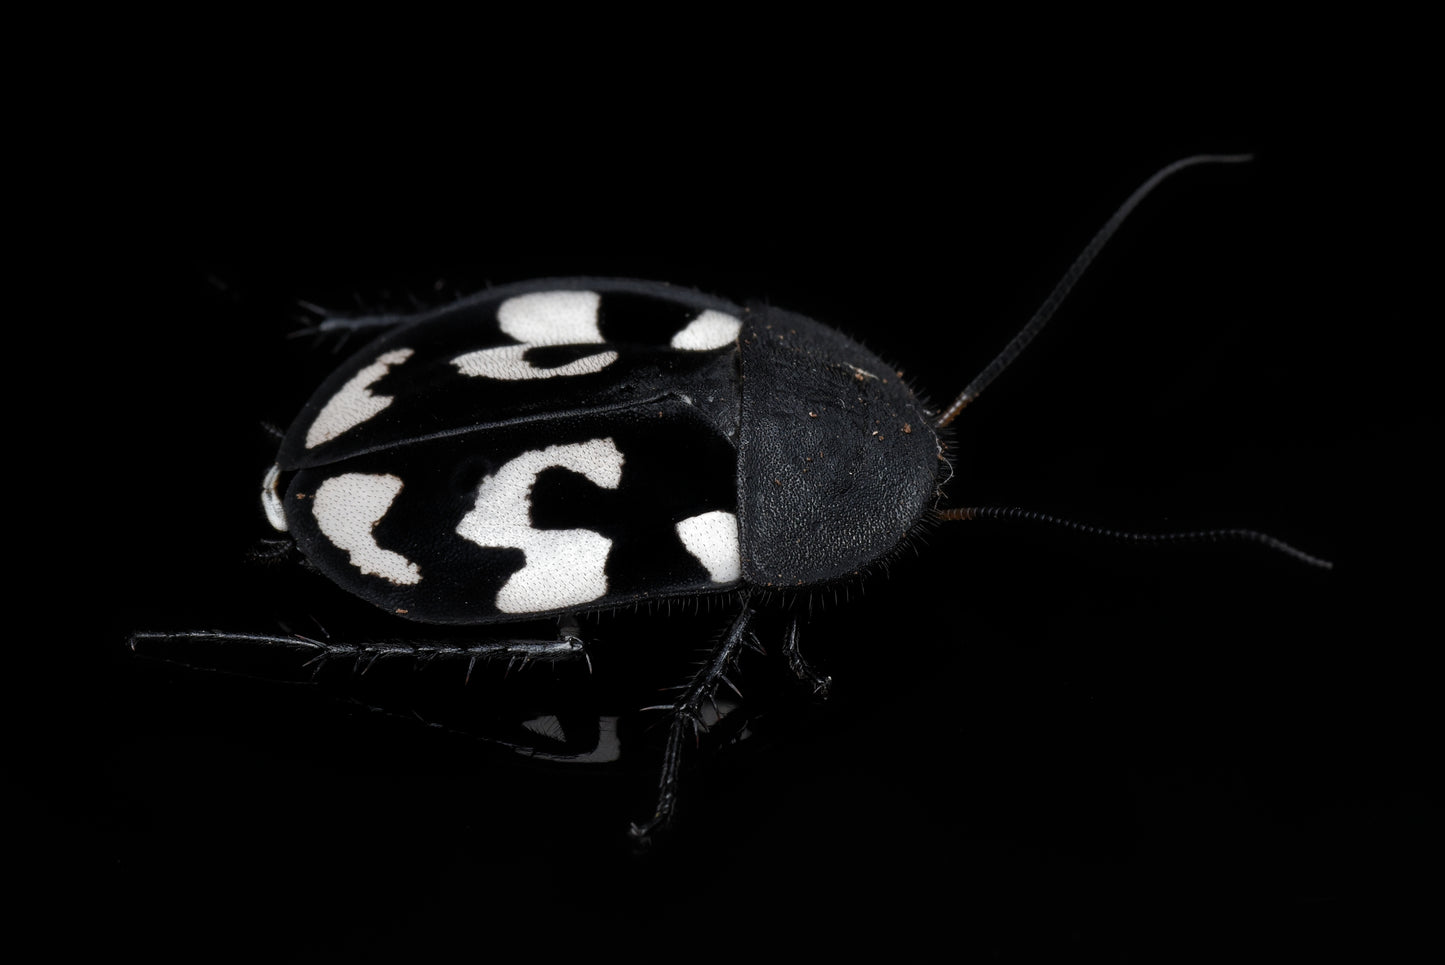 Spørgsmålstegnskakerlak (Therea olegrandjeani) med sit karakteristiske spørgsmåltegn på ryggen